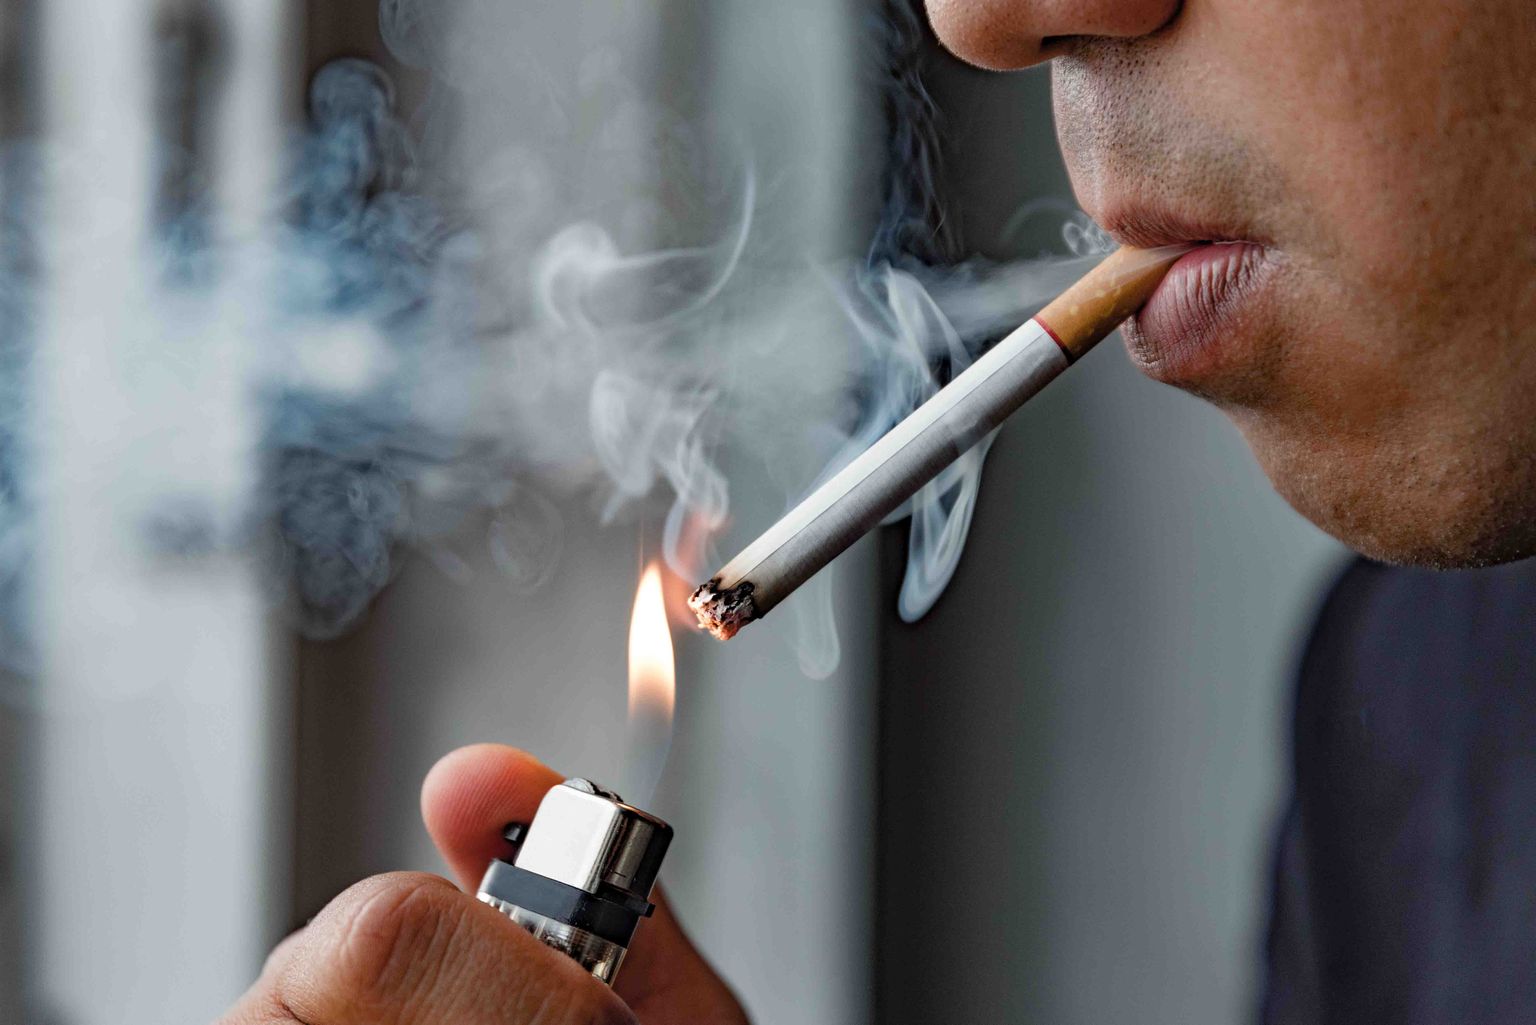 Põlemise käigus eraldub sigaretisuitsust kokku umbes 6 000 erinevat kemikaali.